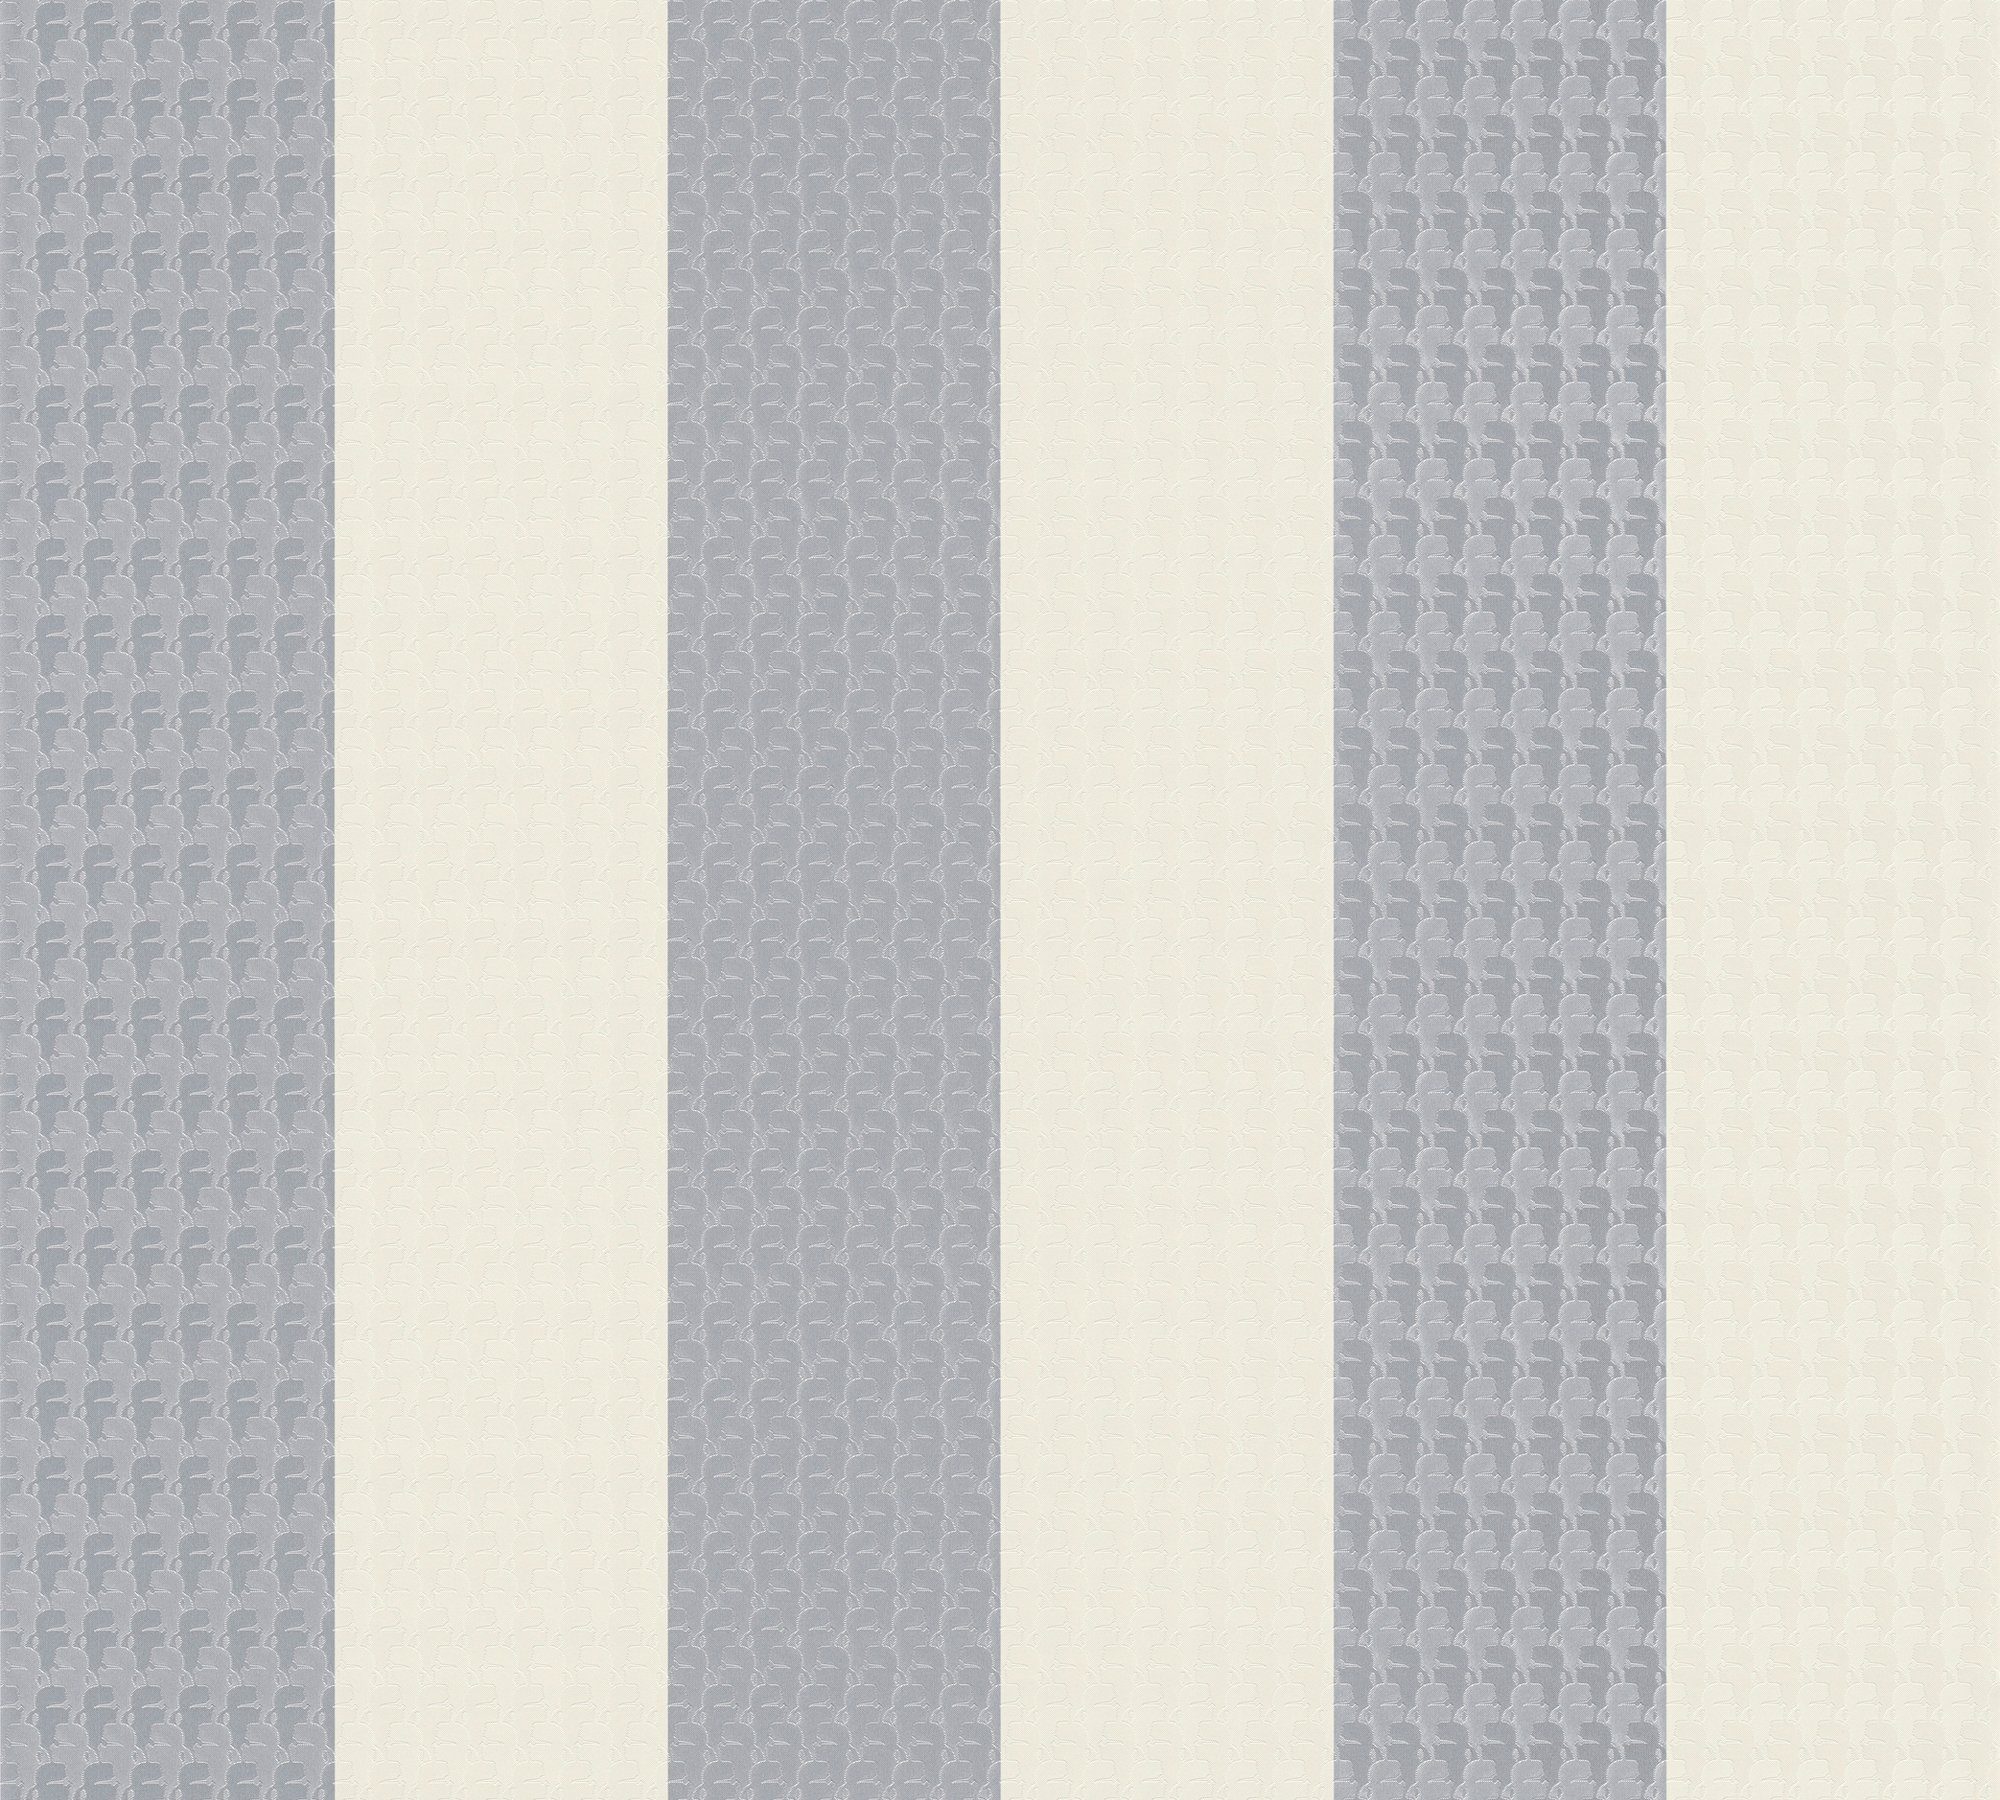 Architects Stripes, Lagerfeld Paper Création A.S. gestreift, Streifentapete Karl Vliestapete grau/weiß/creme Streifen, Designer Tapete